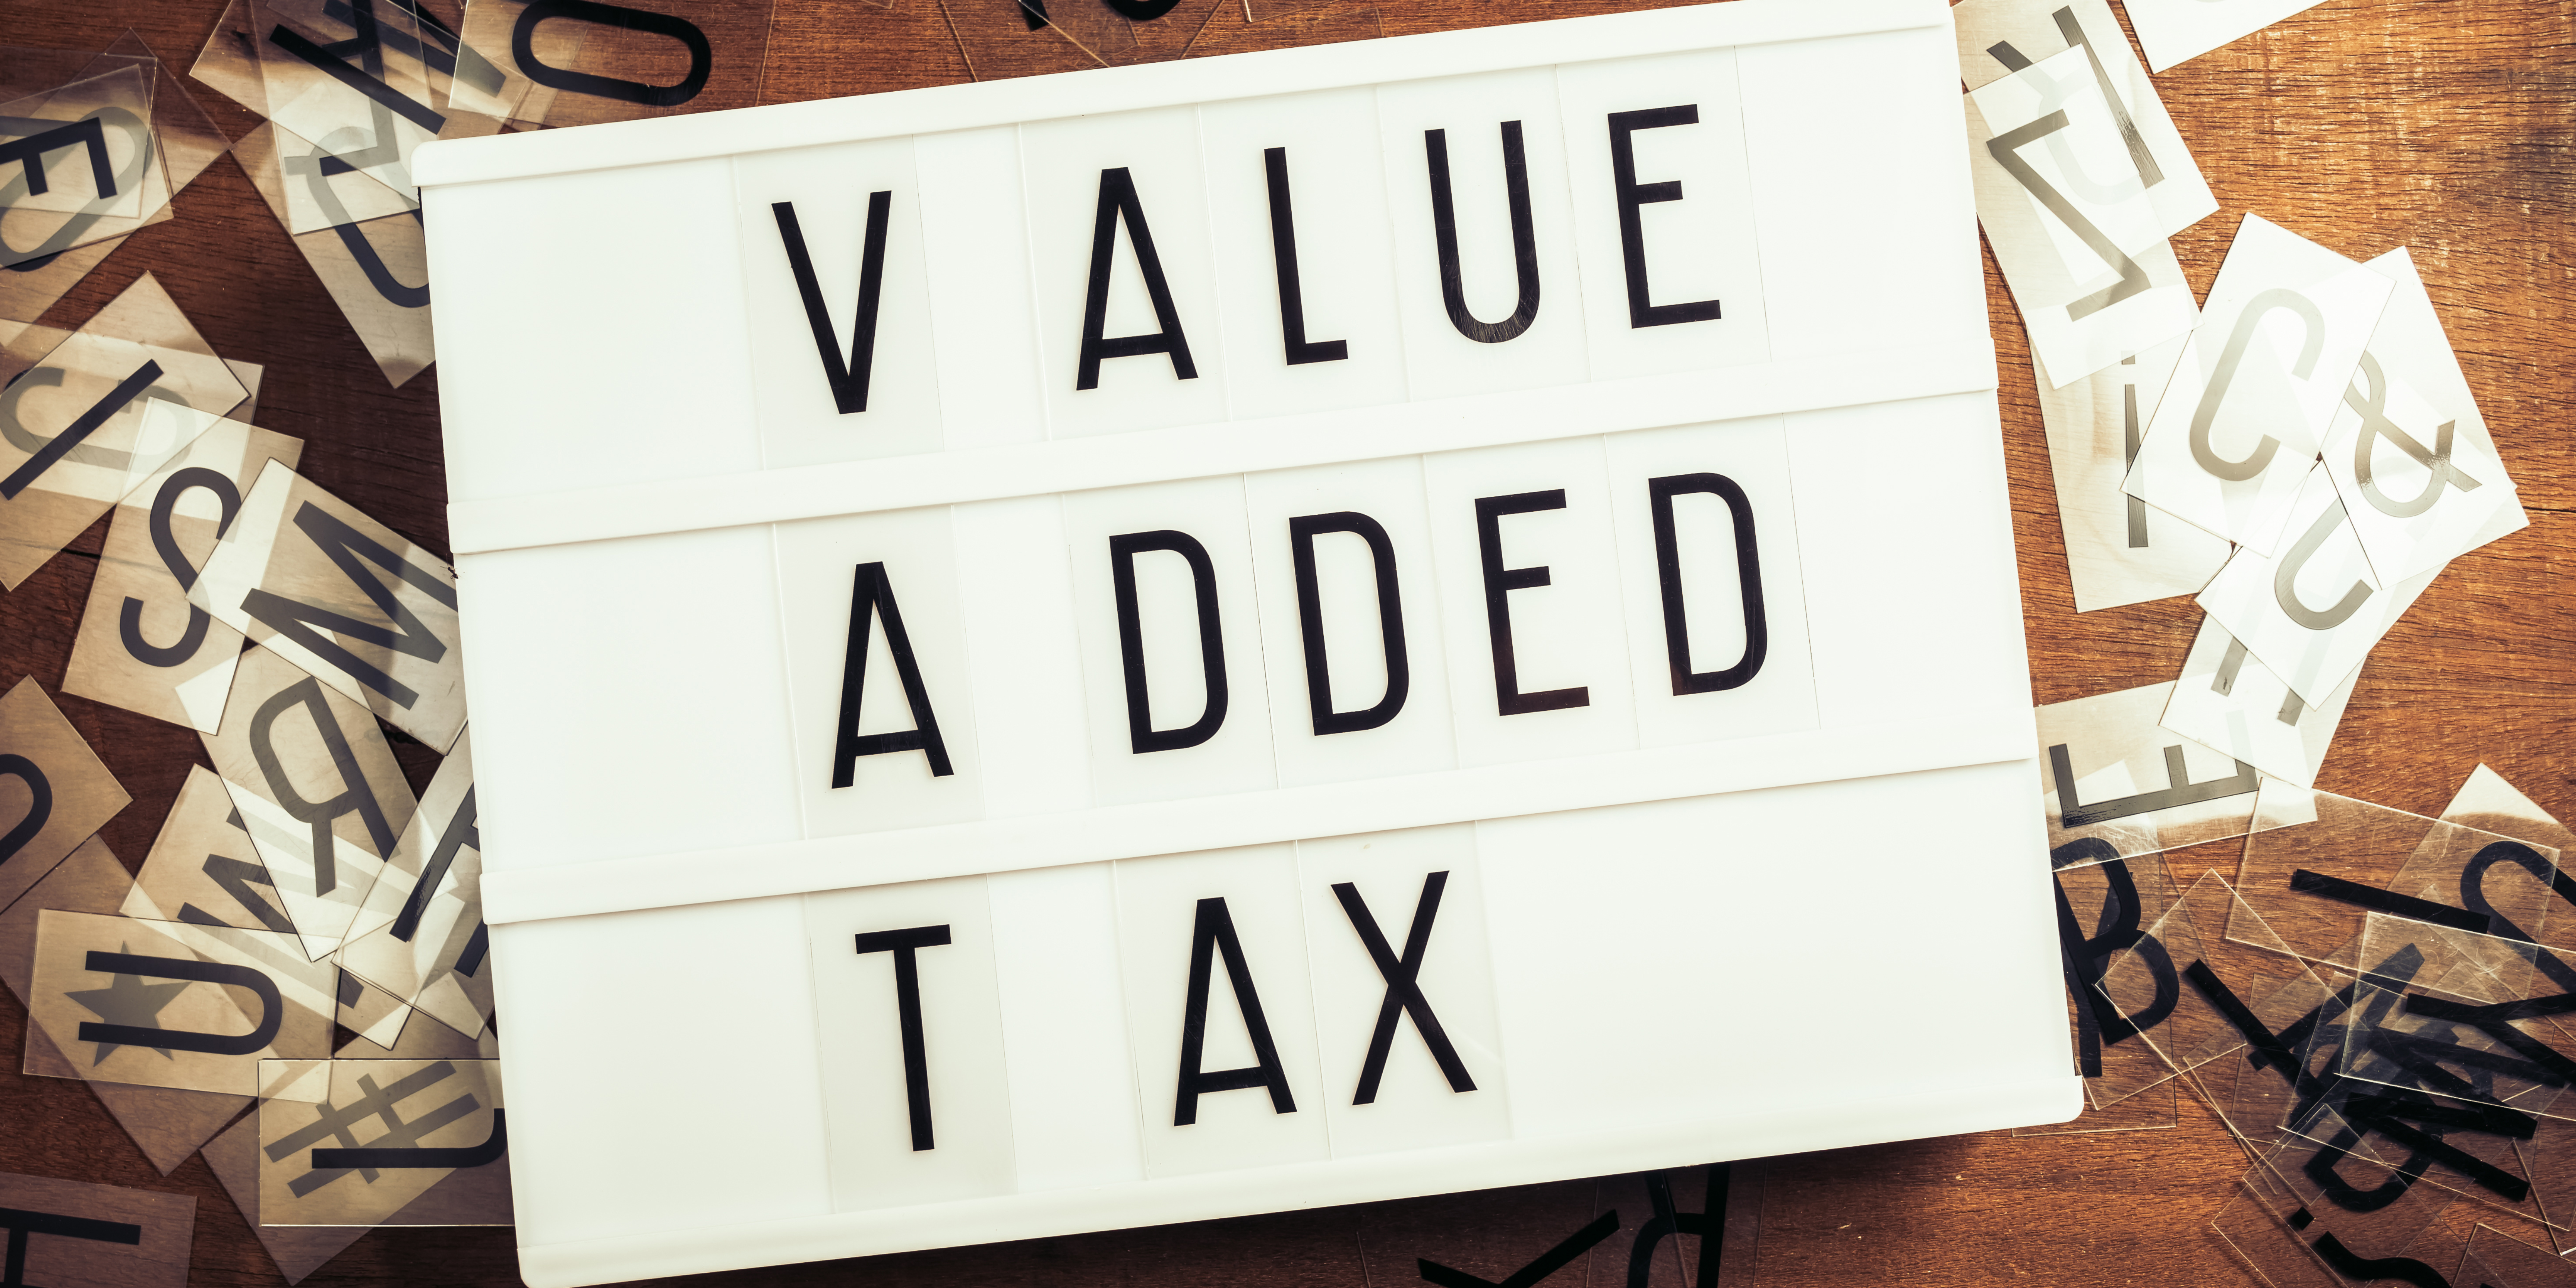 Semelhanças e diferenças entre VAT europeu e IVA Dual Brasileiro